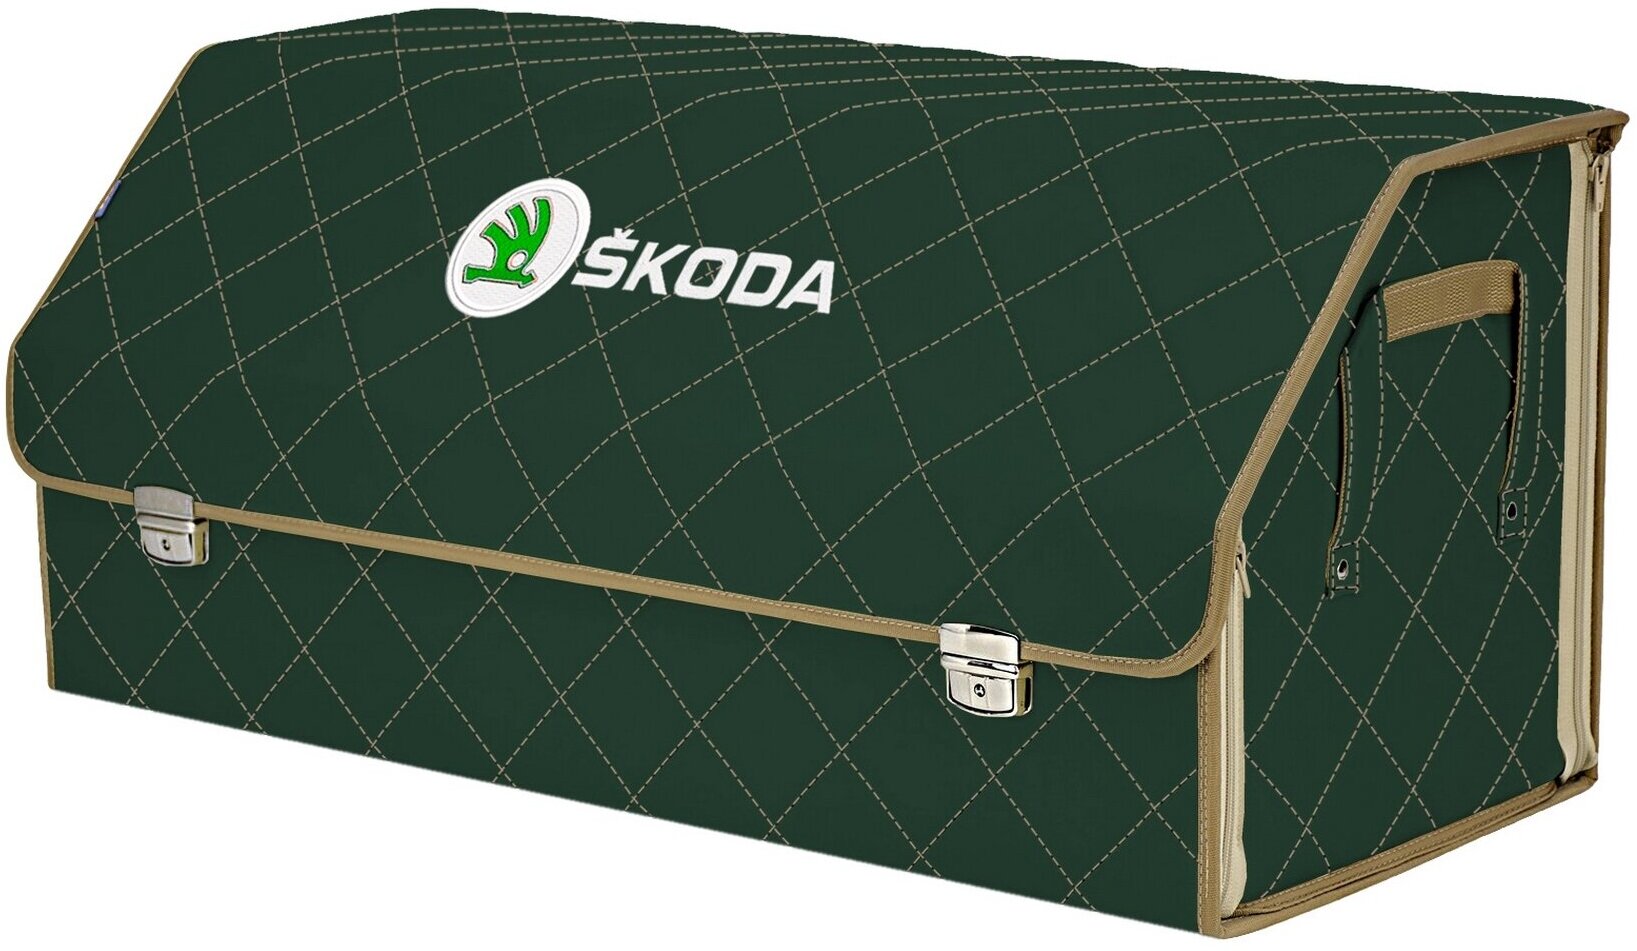 Органайзер-саквояж в багажник "Союз Премиум" (размер XXL). Цвет: зеленый с бежевой прострочкой Ромб и вышивкой Skoda (Шкода).